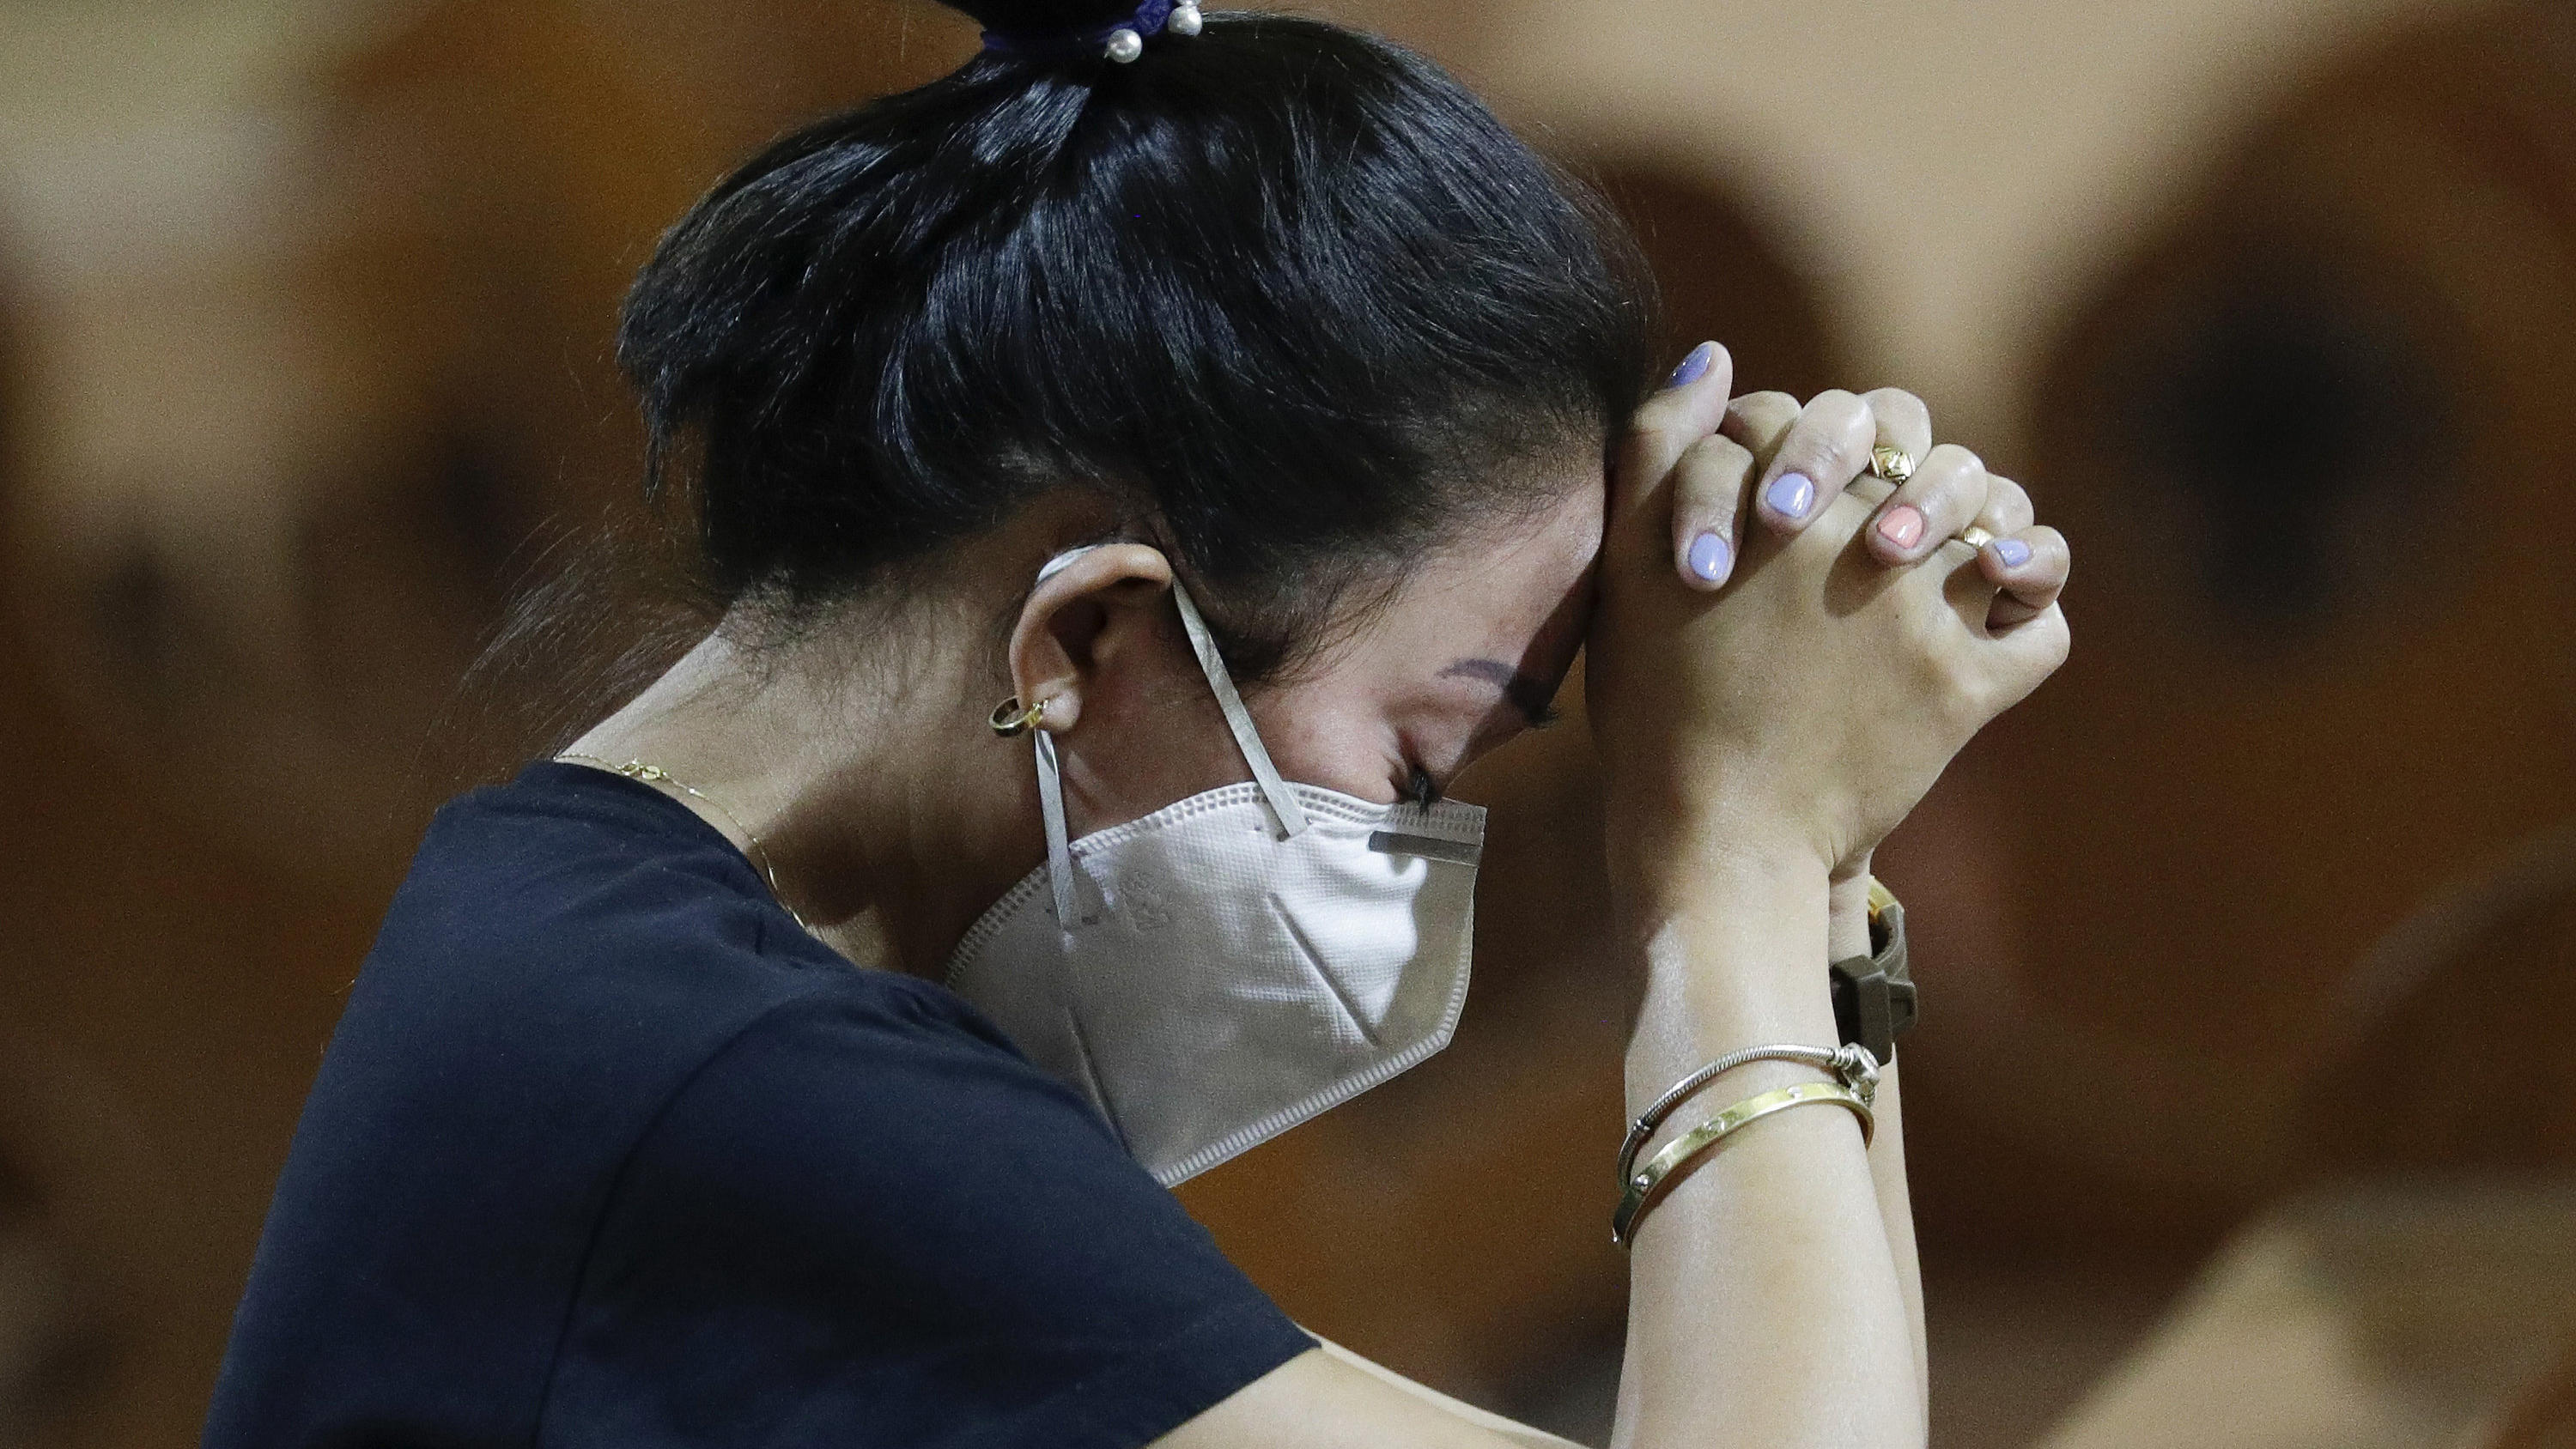 30.01.2020, Philippinen, Manila: Eine Frau mit Atemschutzmaske betet während einer Messe. Die Zahl der Infektionen und Todesopfer durch die Lungenkrankheit aus China ist weltweit erneut gestiegen. Foto: Aaron Favila/AP/dpa +++ dpa-Bildfunk +++